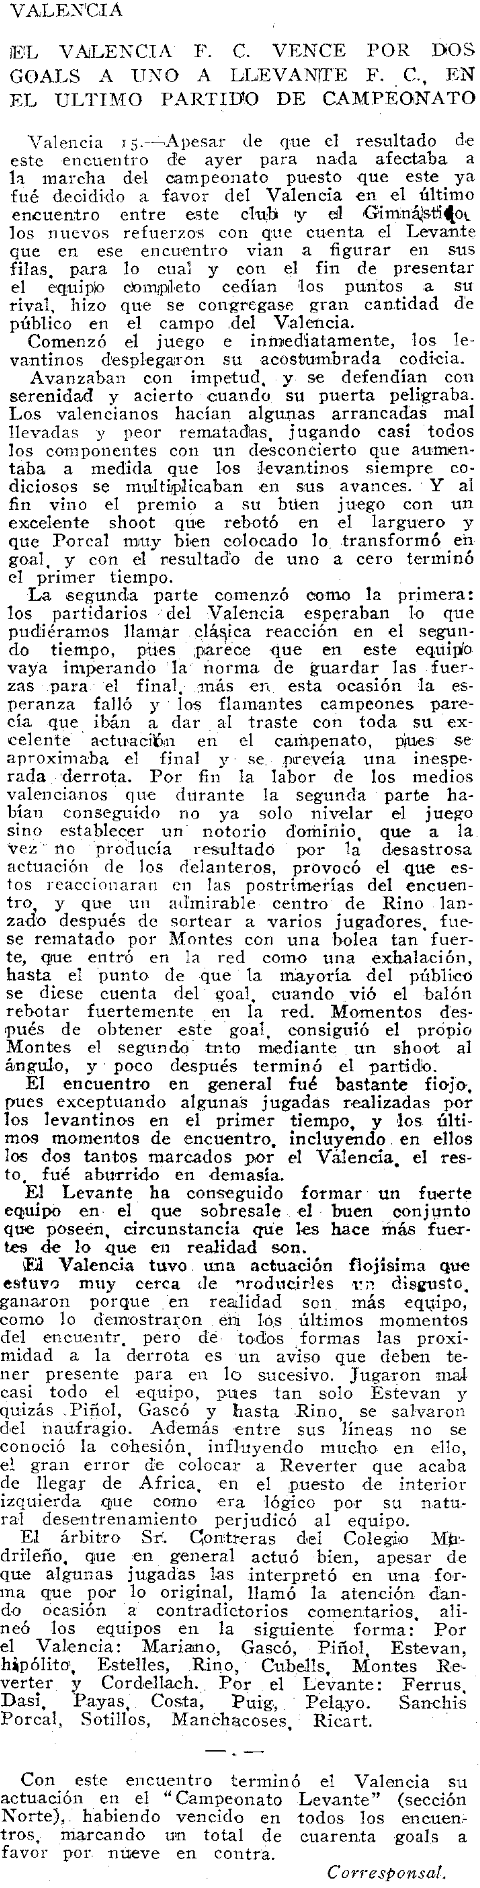 1923.01.15 (15 января 1923), Валенсия - Леванте, 2-1.png